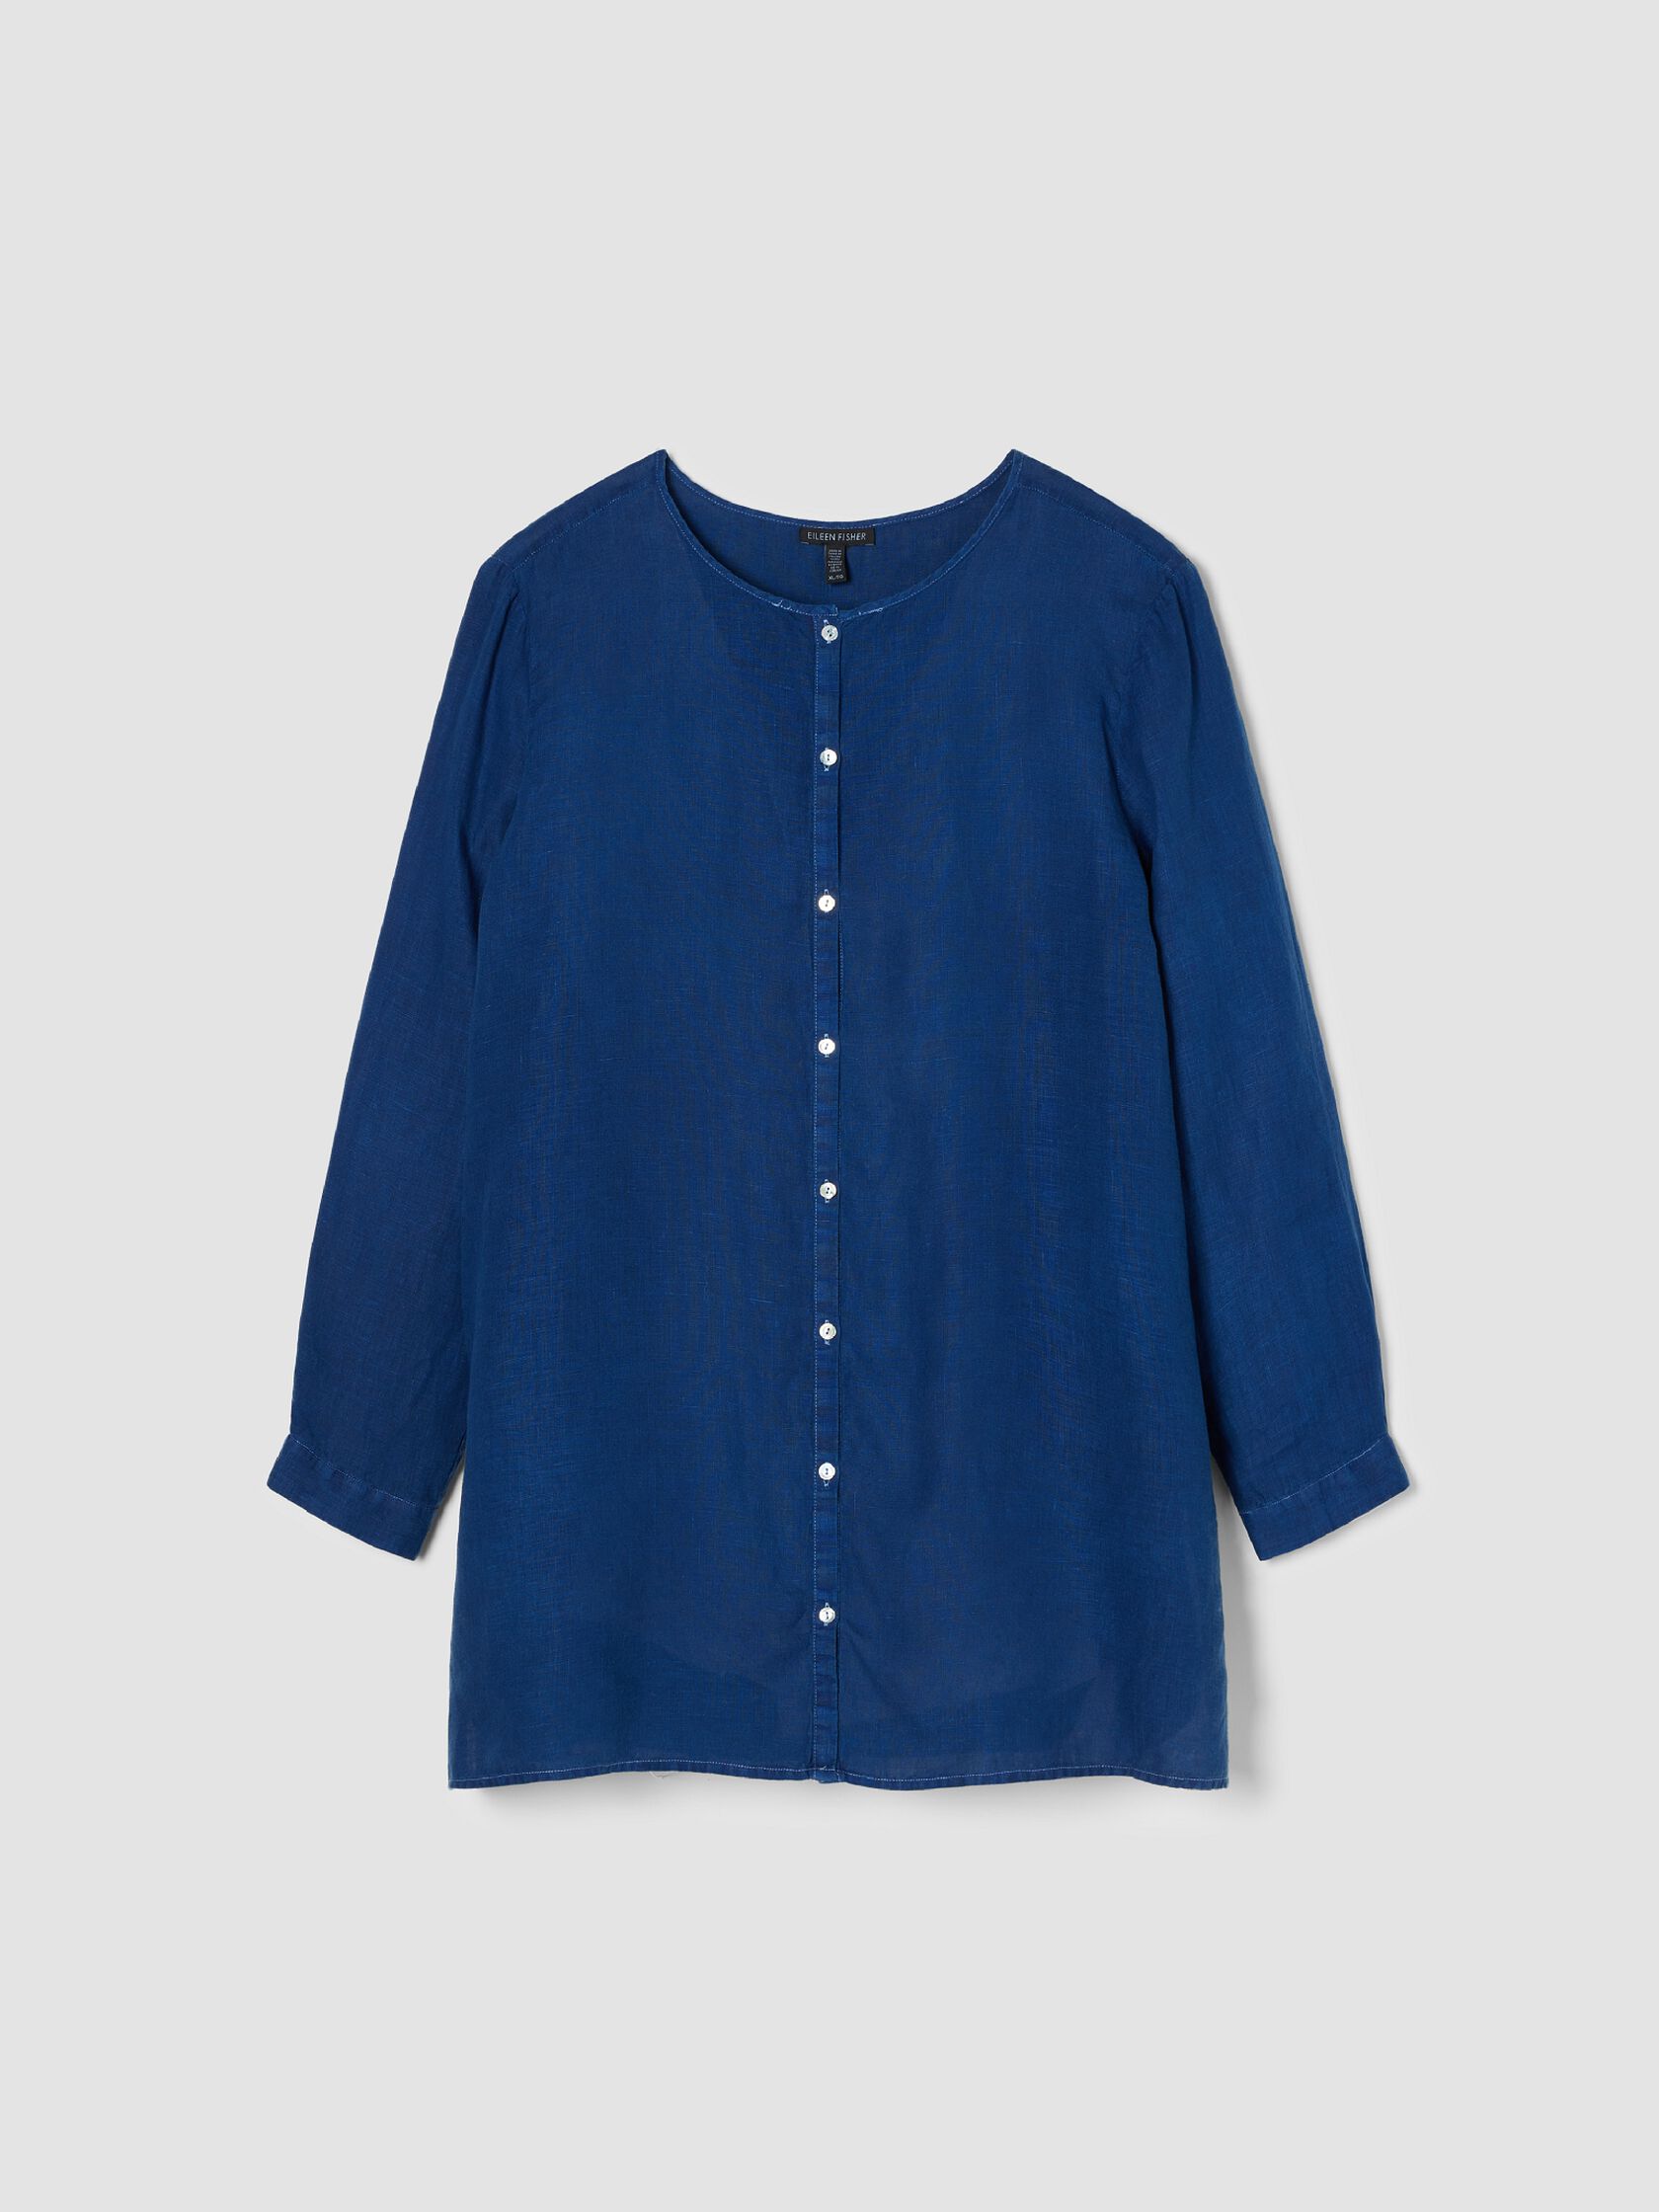 Renew Organic Linen Long-Sleeve Shirt, XL